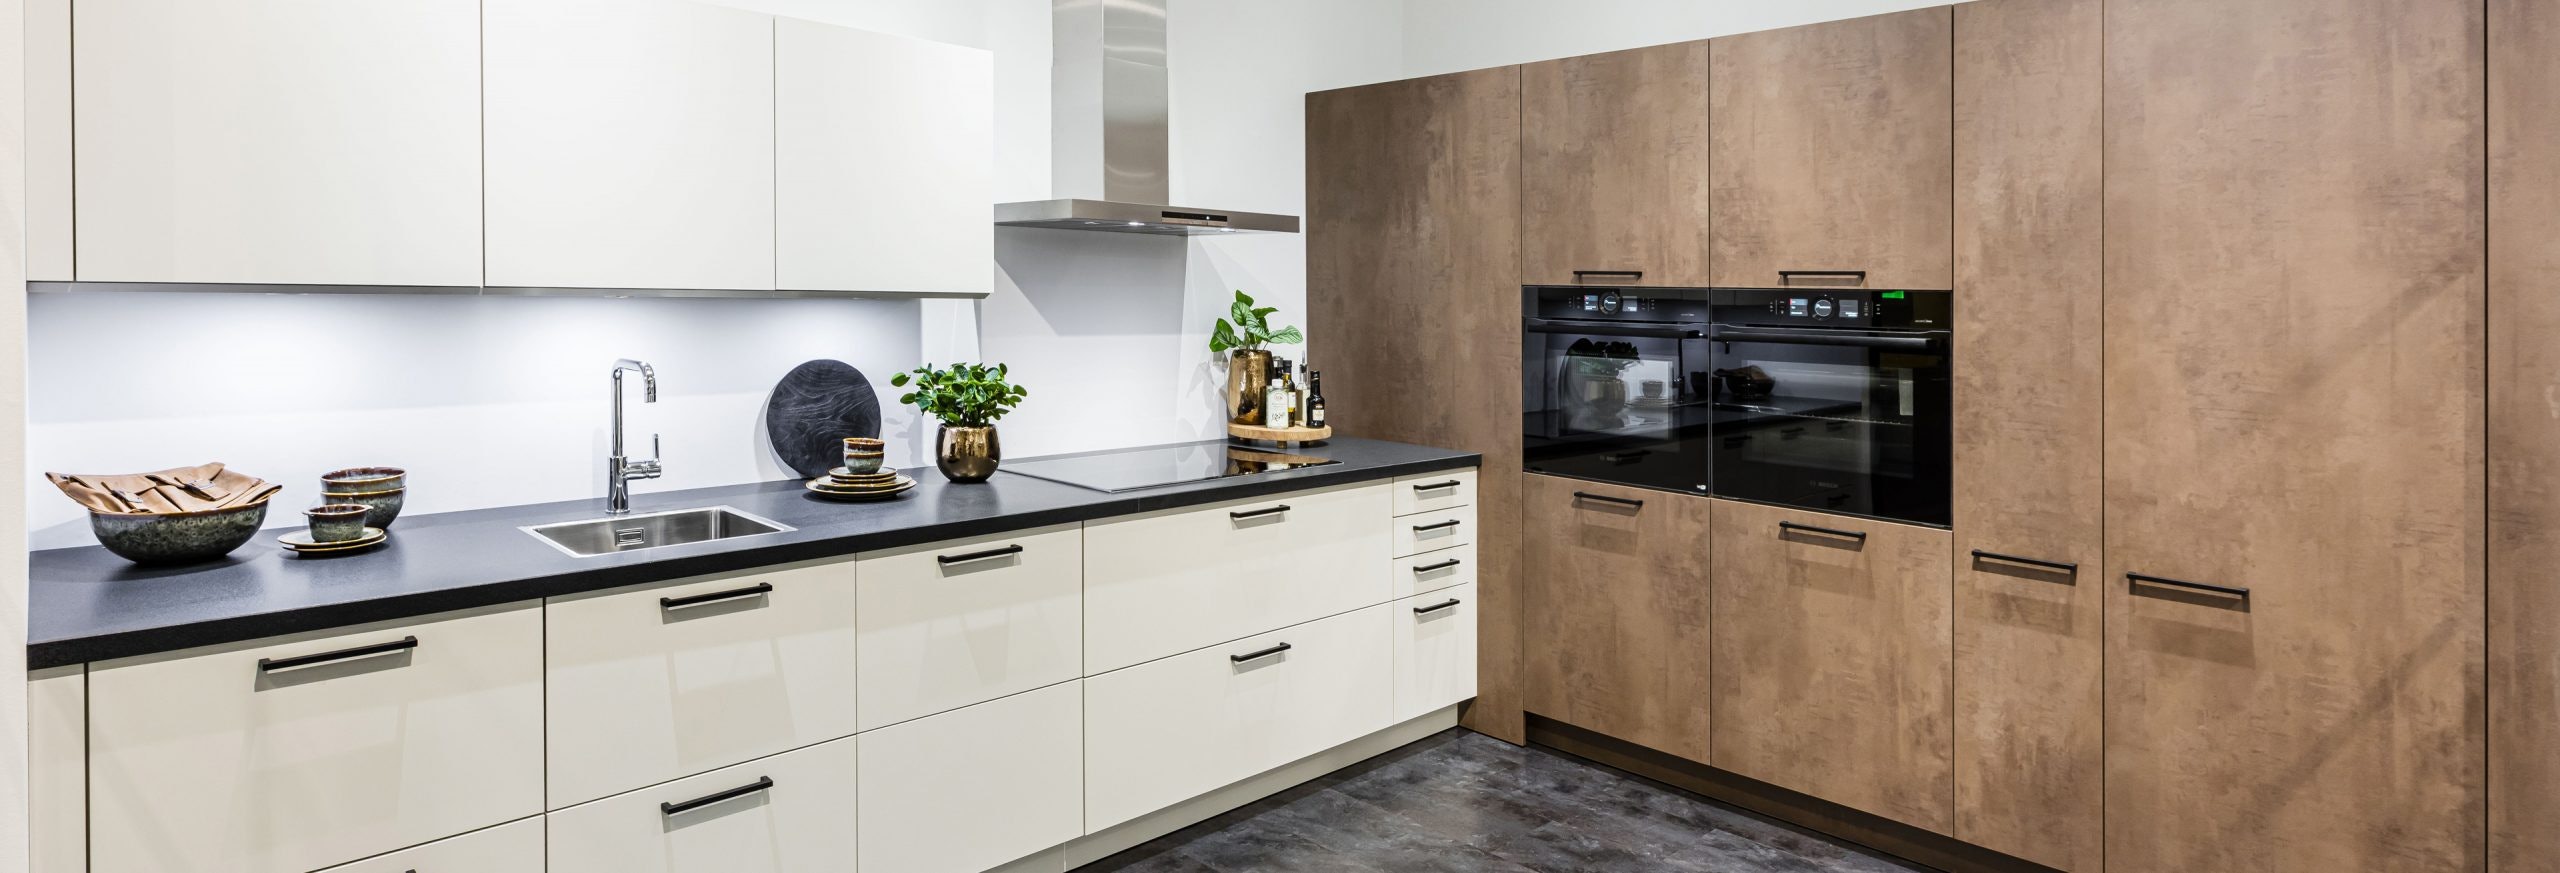 Keuken 1400225 - Lichte ruime hoekkeuken met hoge keukenkasten in geoxideerd staal